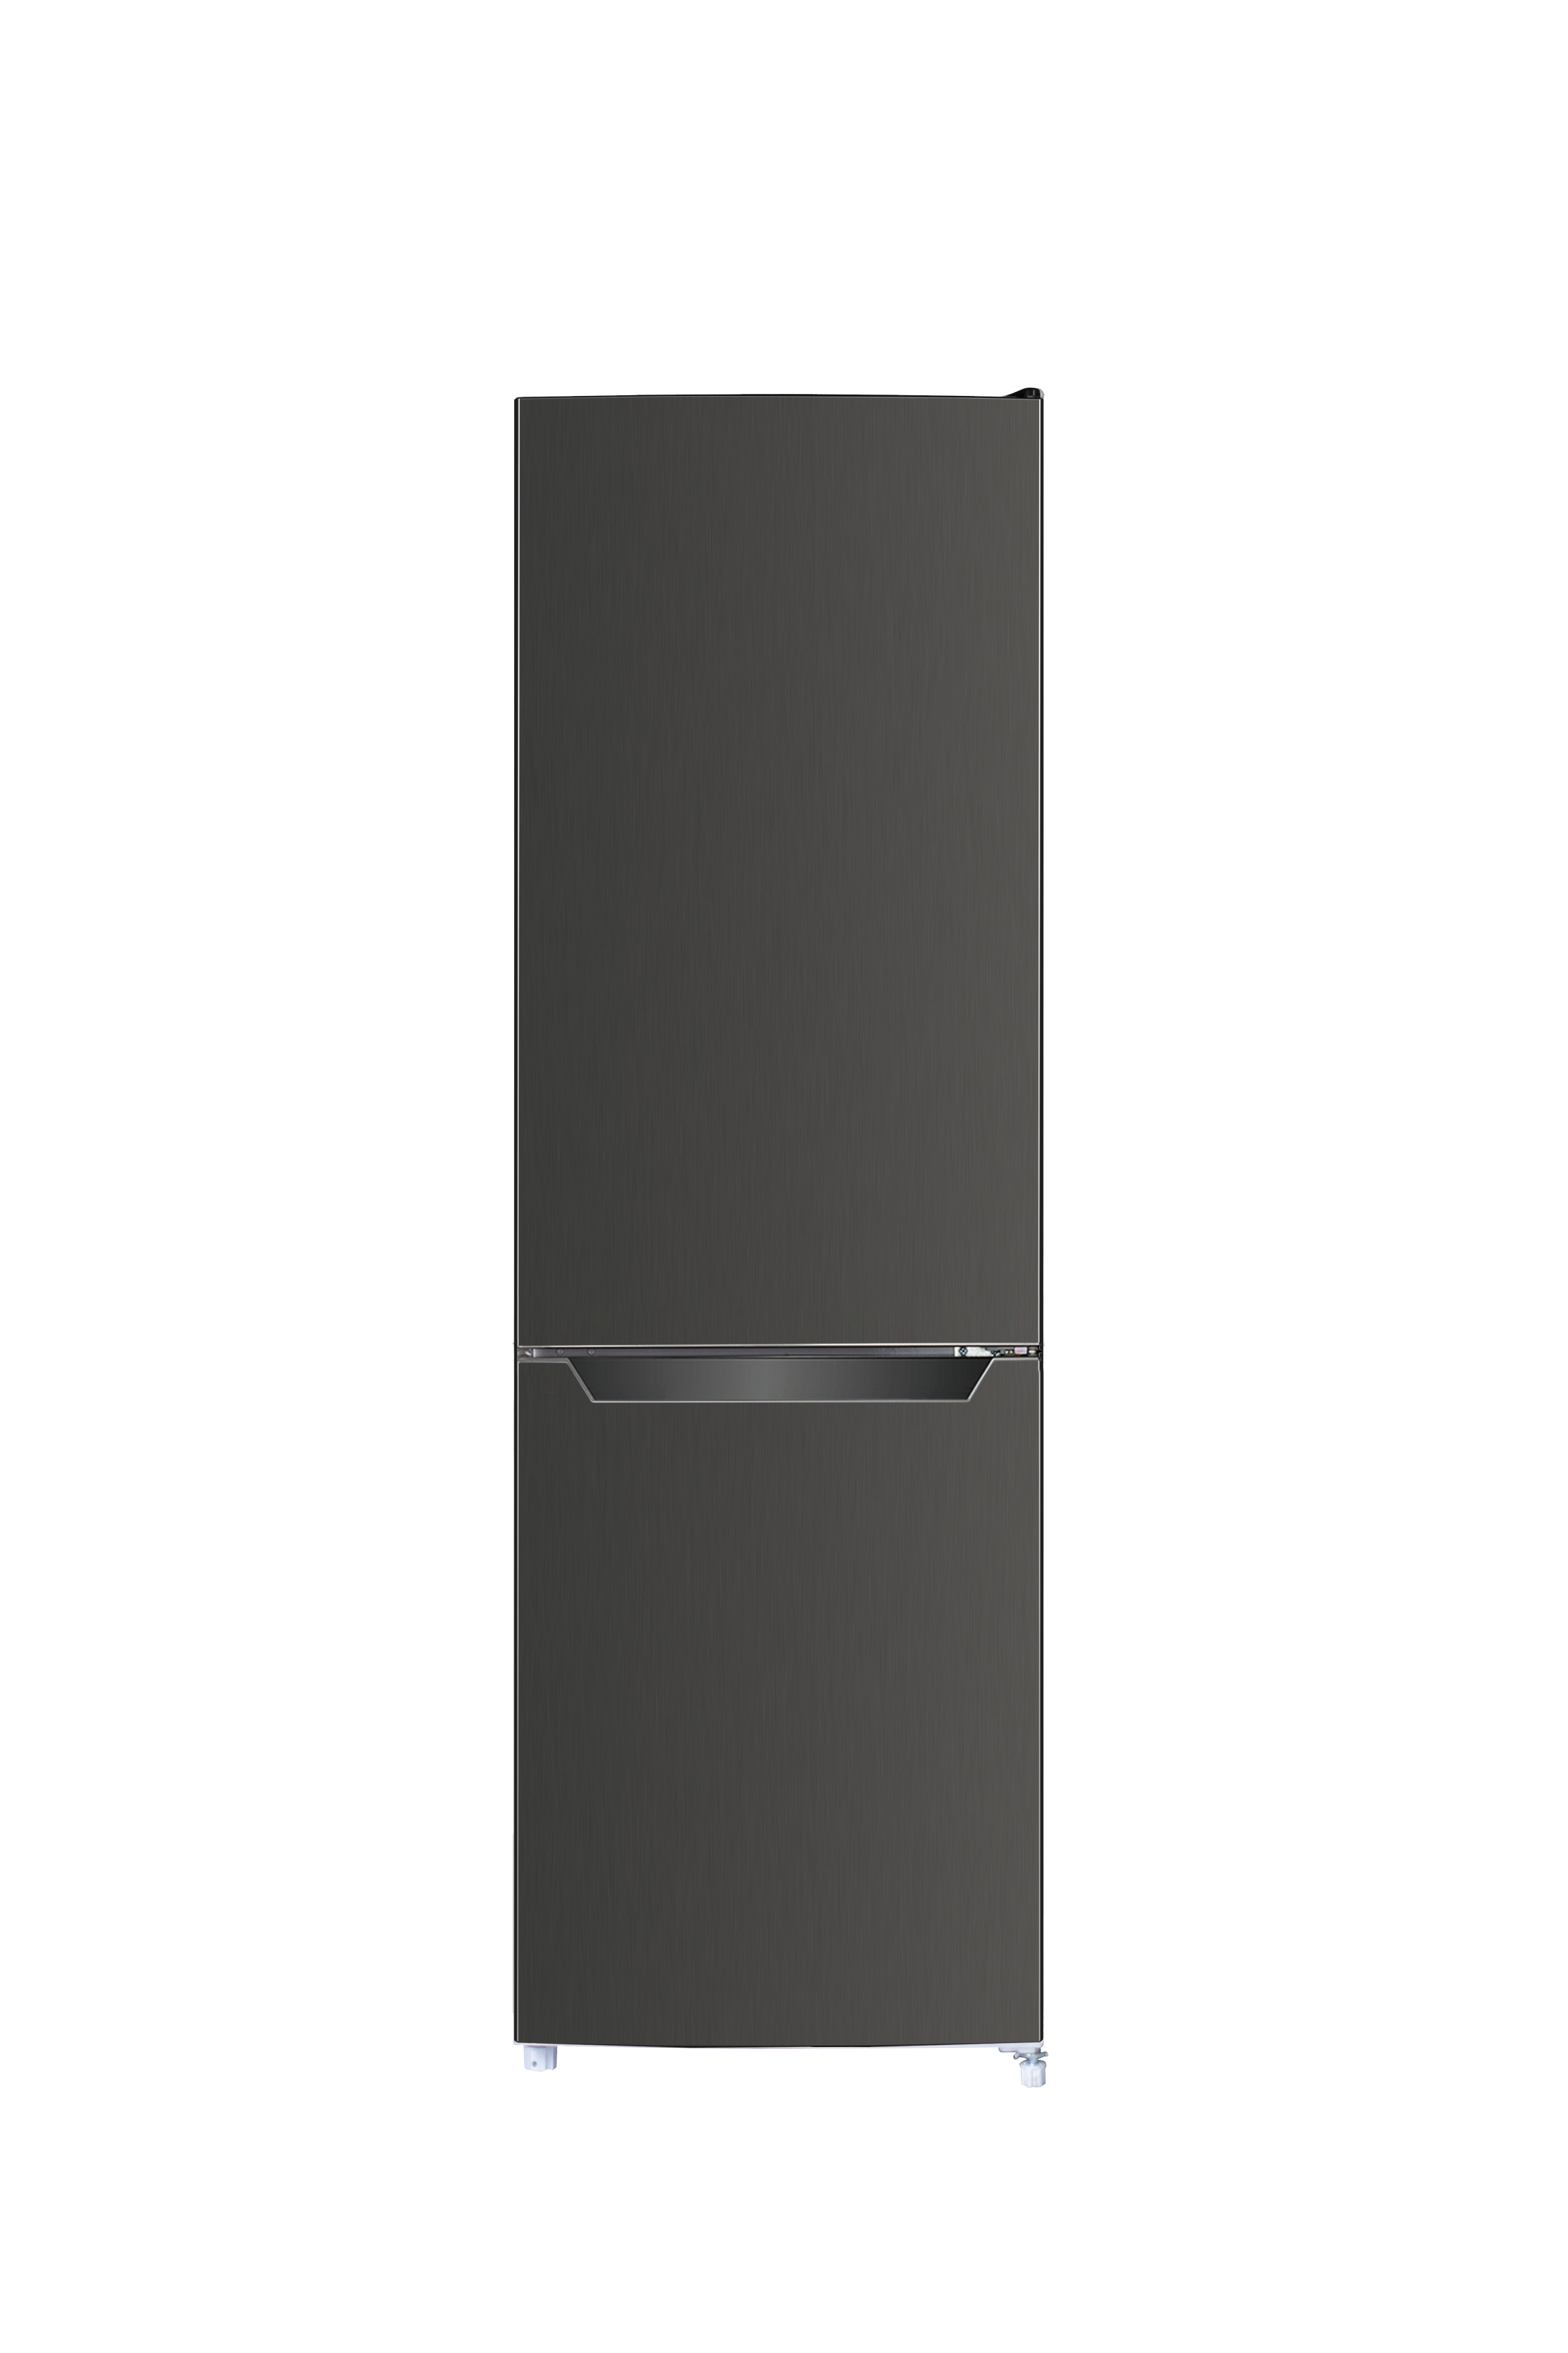 Kühlschrank Kühl Gefrierkombination Standgerät freistehend Black Steel Respekta